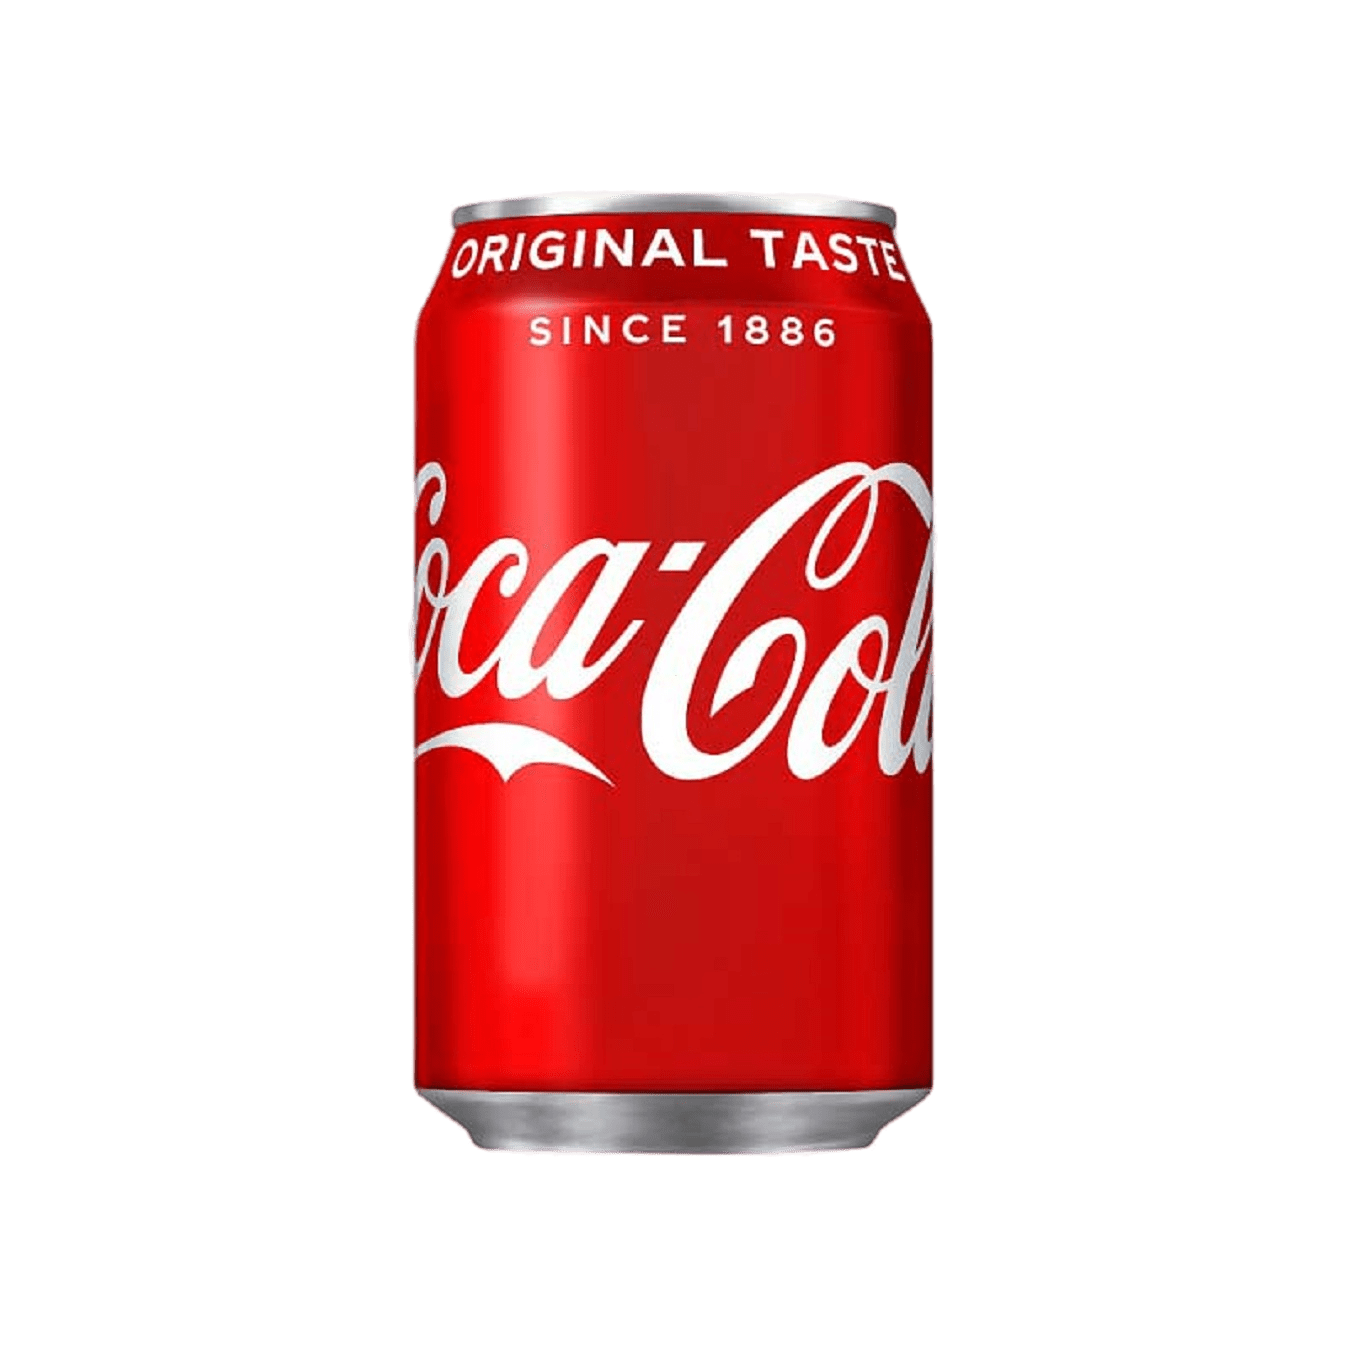 Coca-Cola-330ml